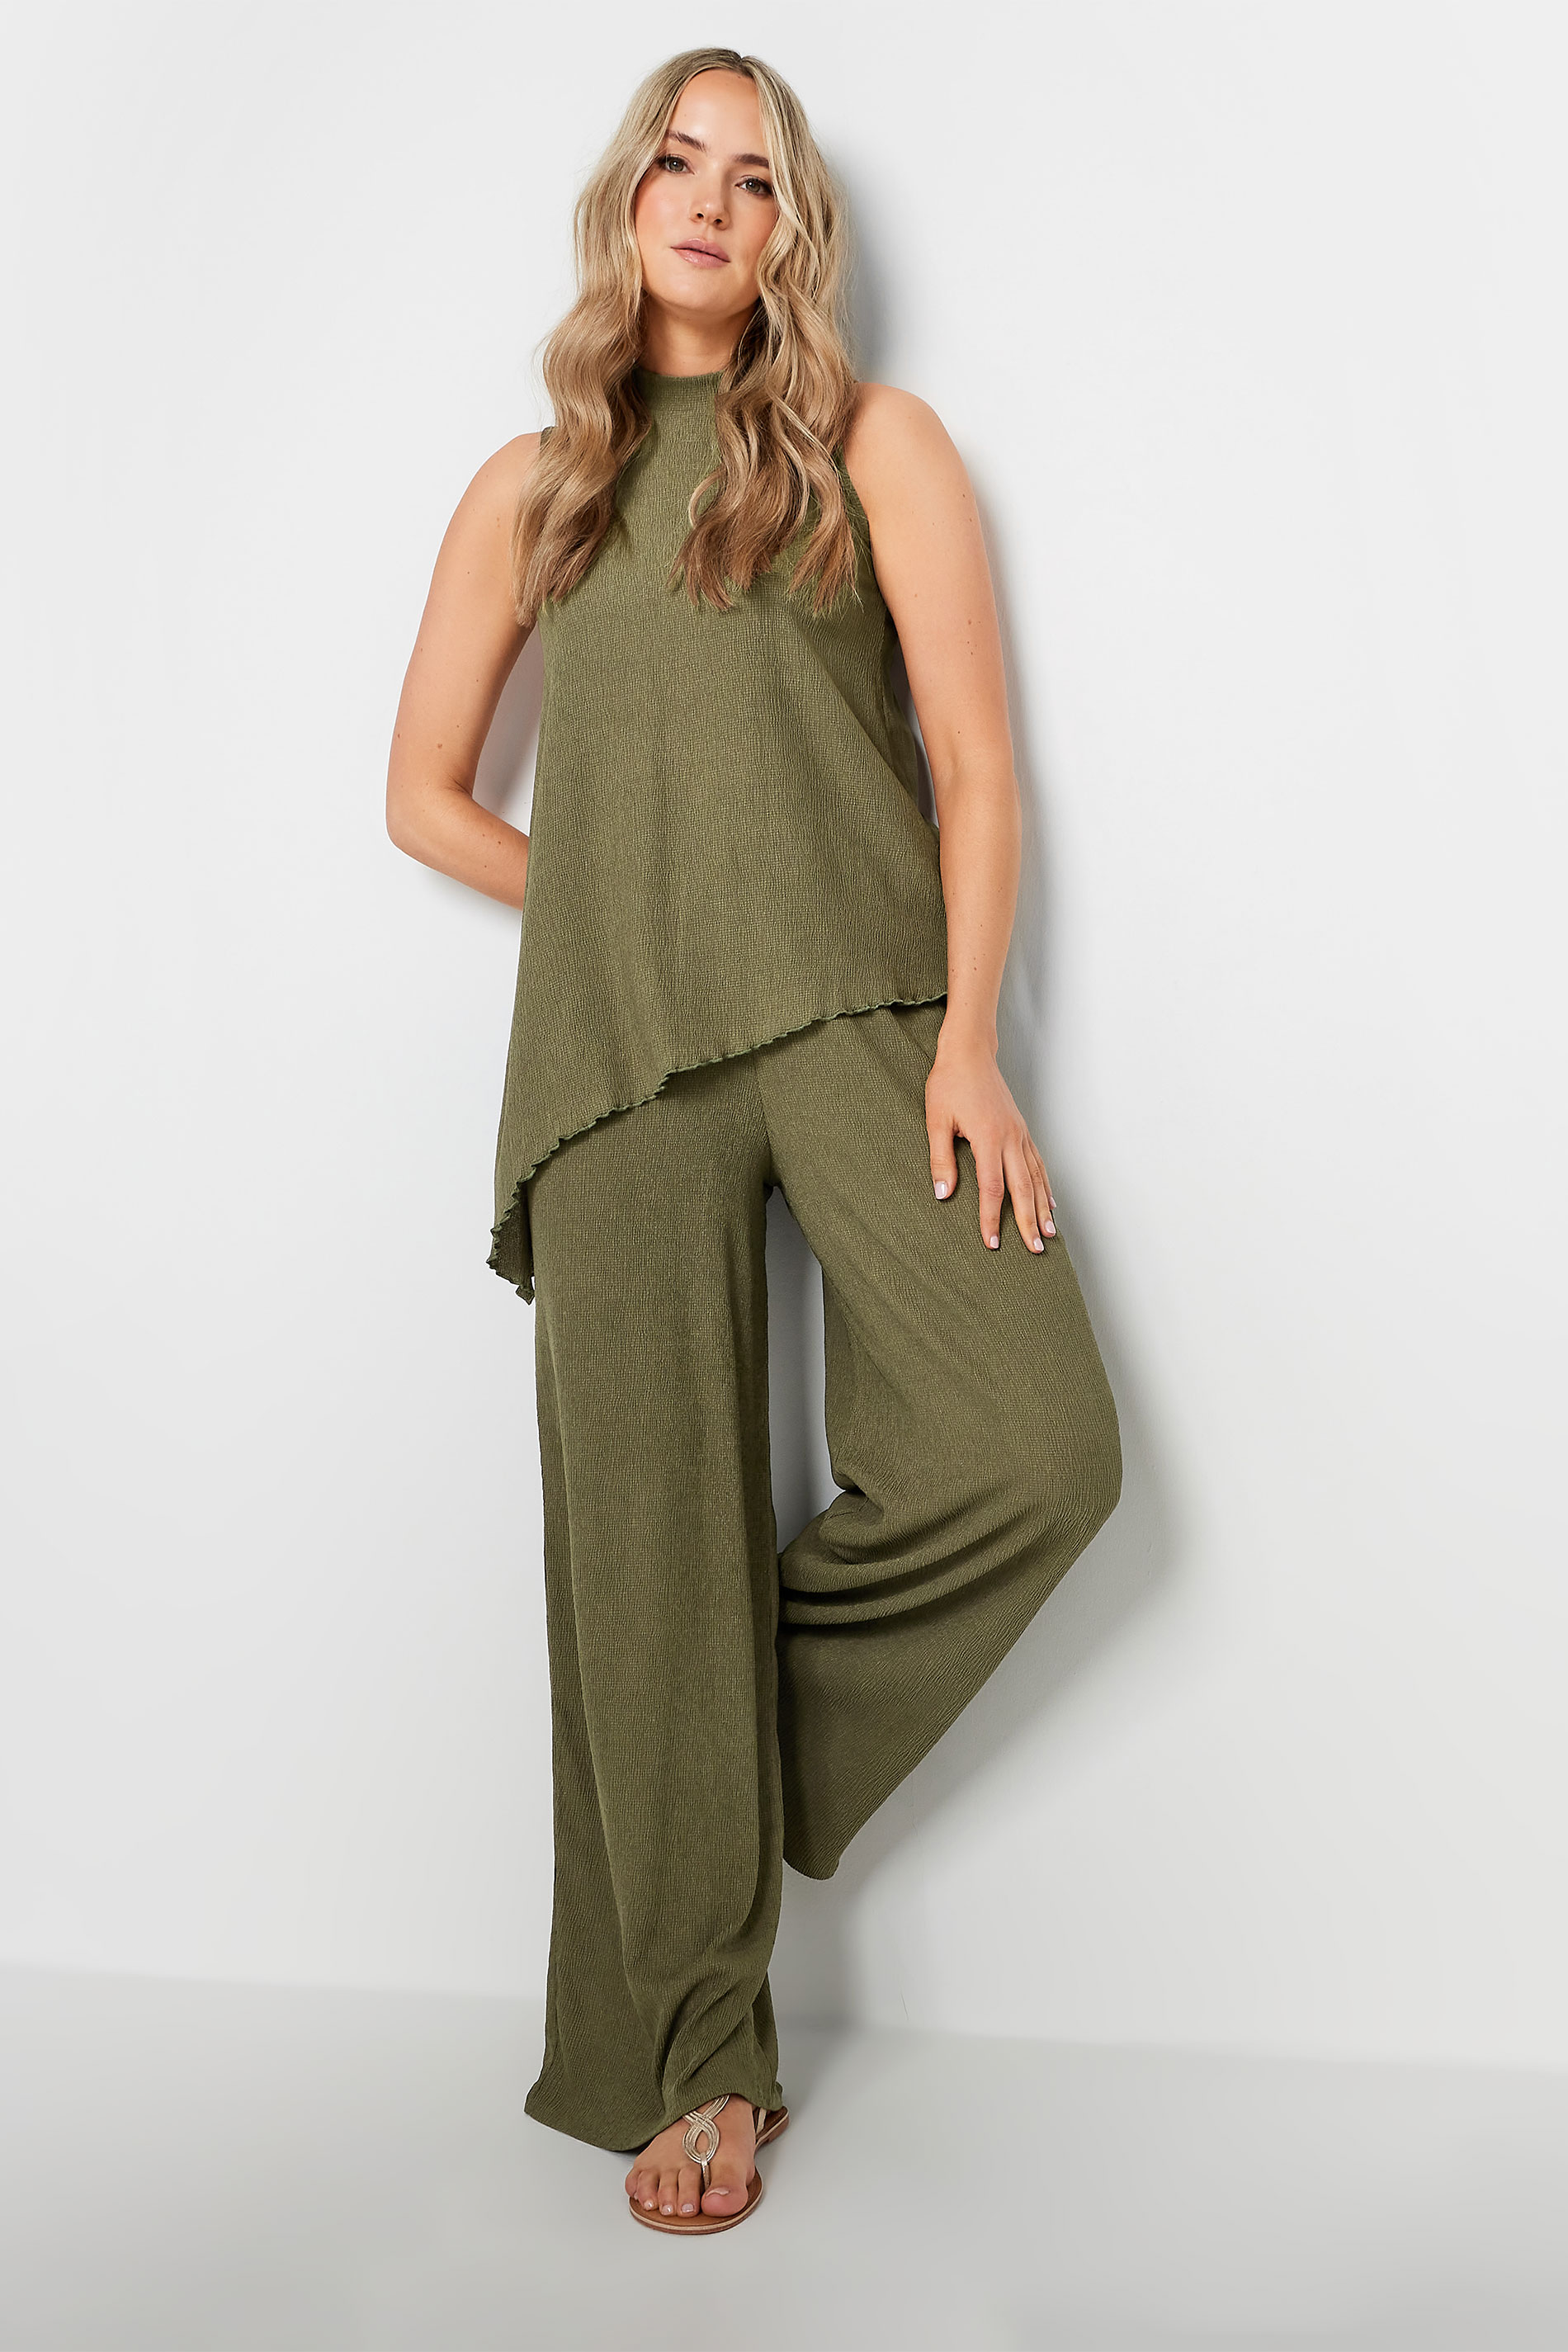 LTS Tall Women's Khaki Green Textured Asymmetric Top | Long Tall Sally 2